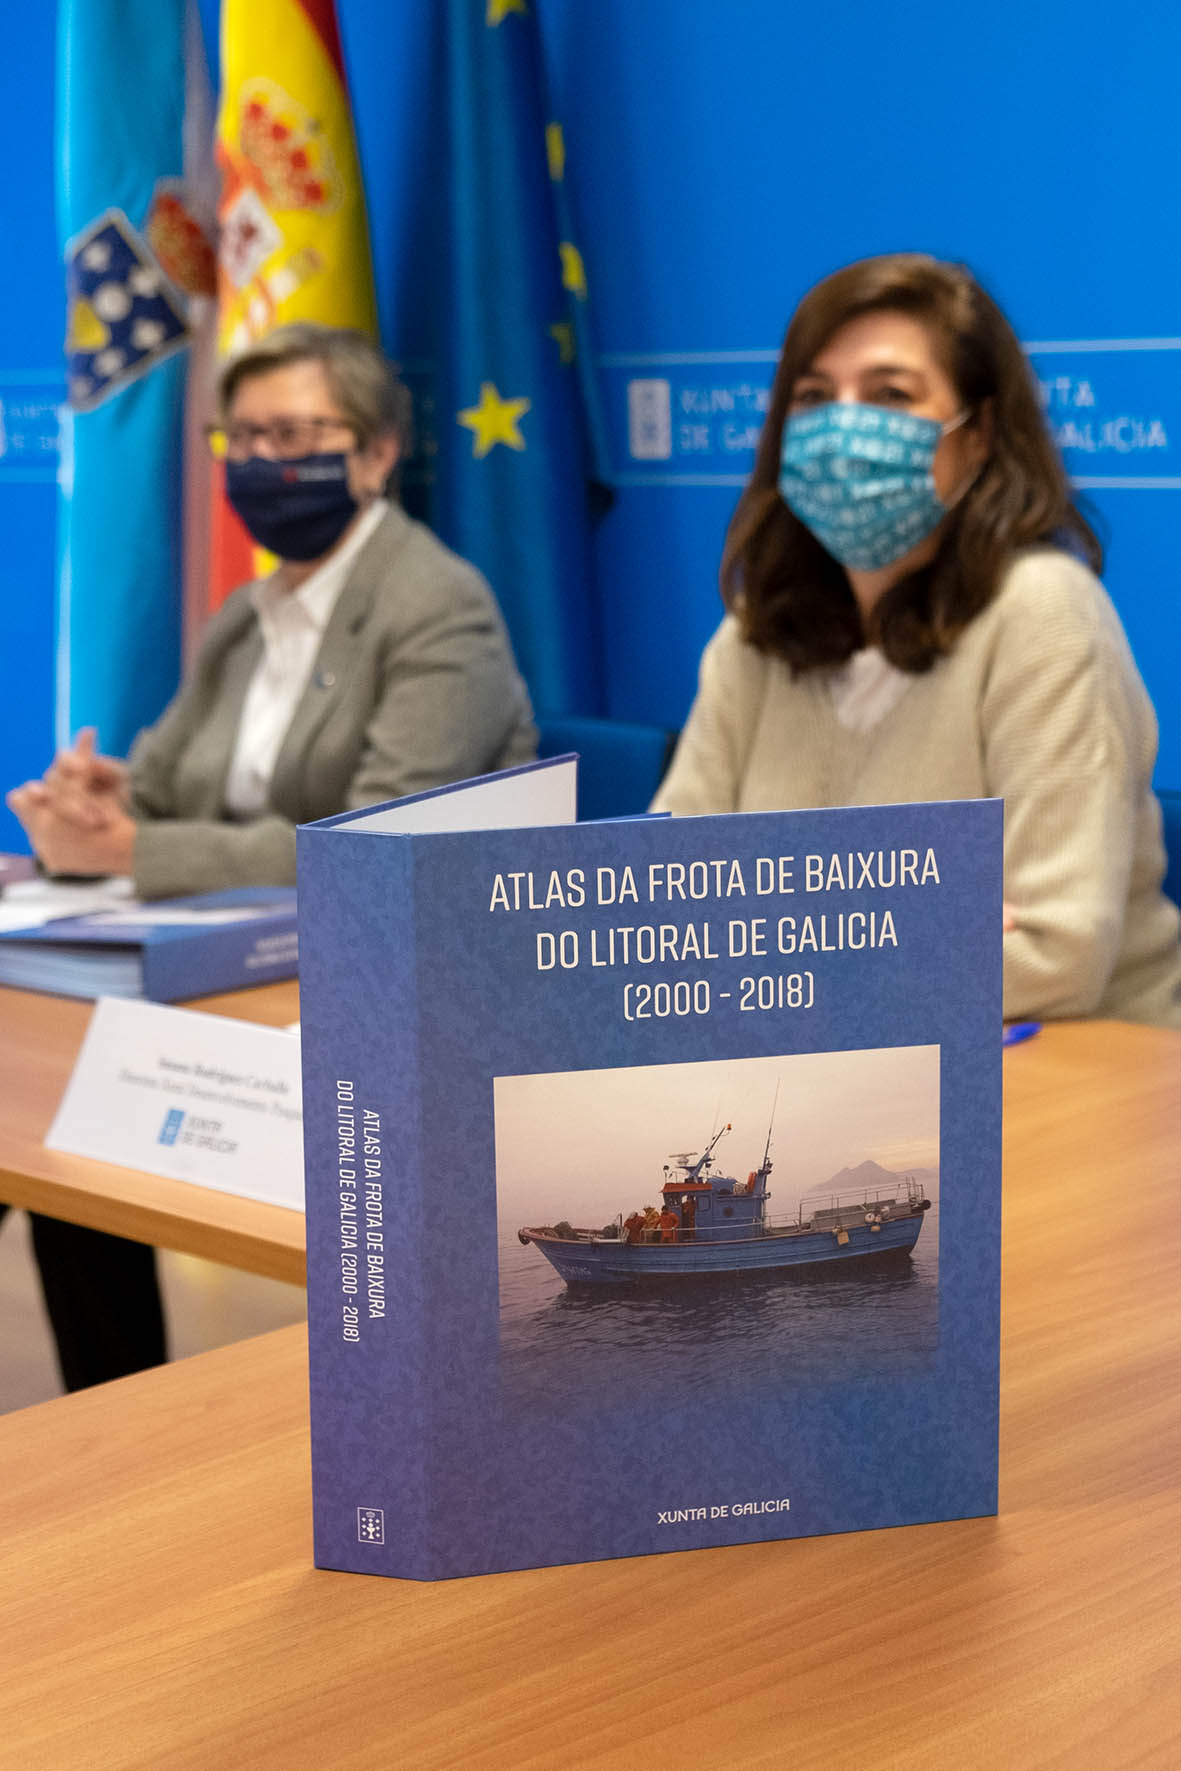 Atlas da frota de baixura do litoral de Galicia 2000-2018